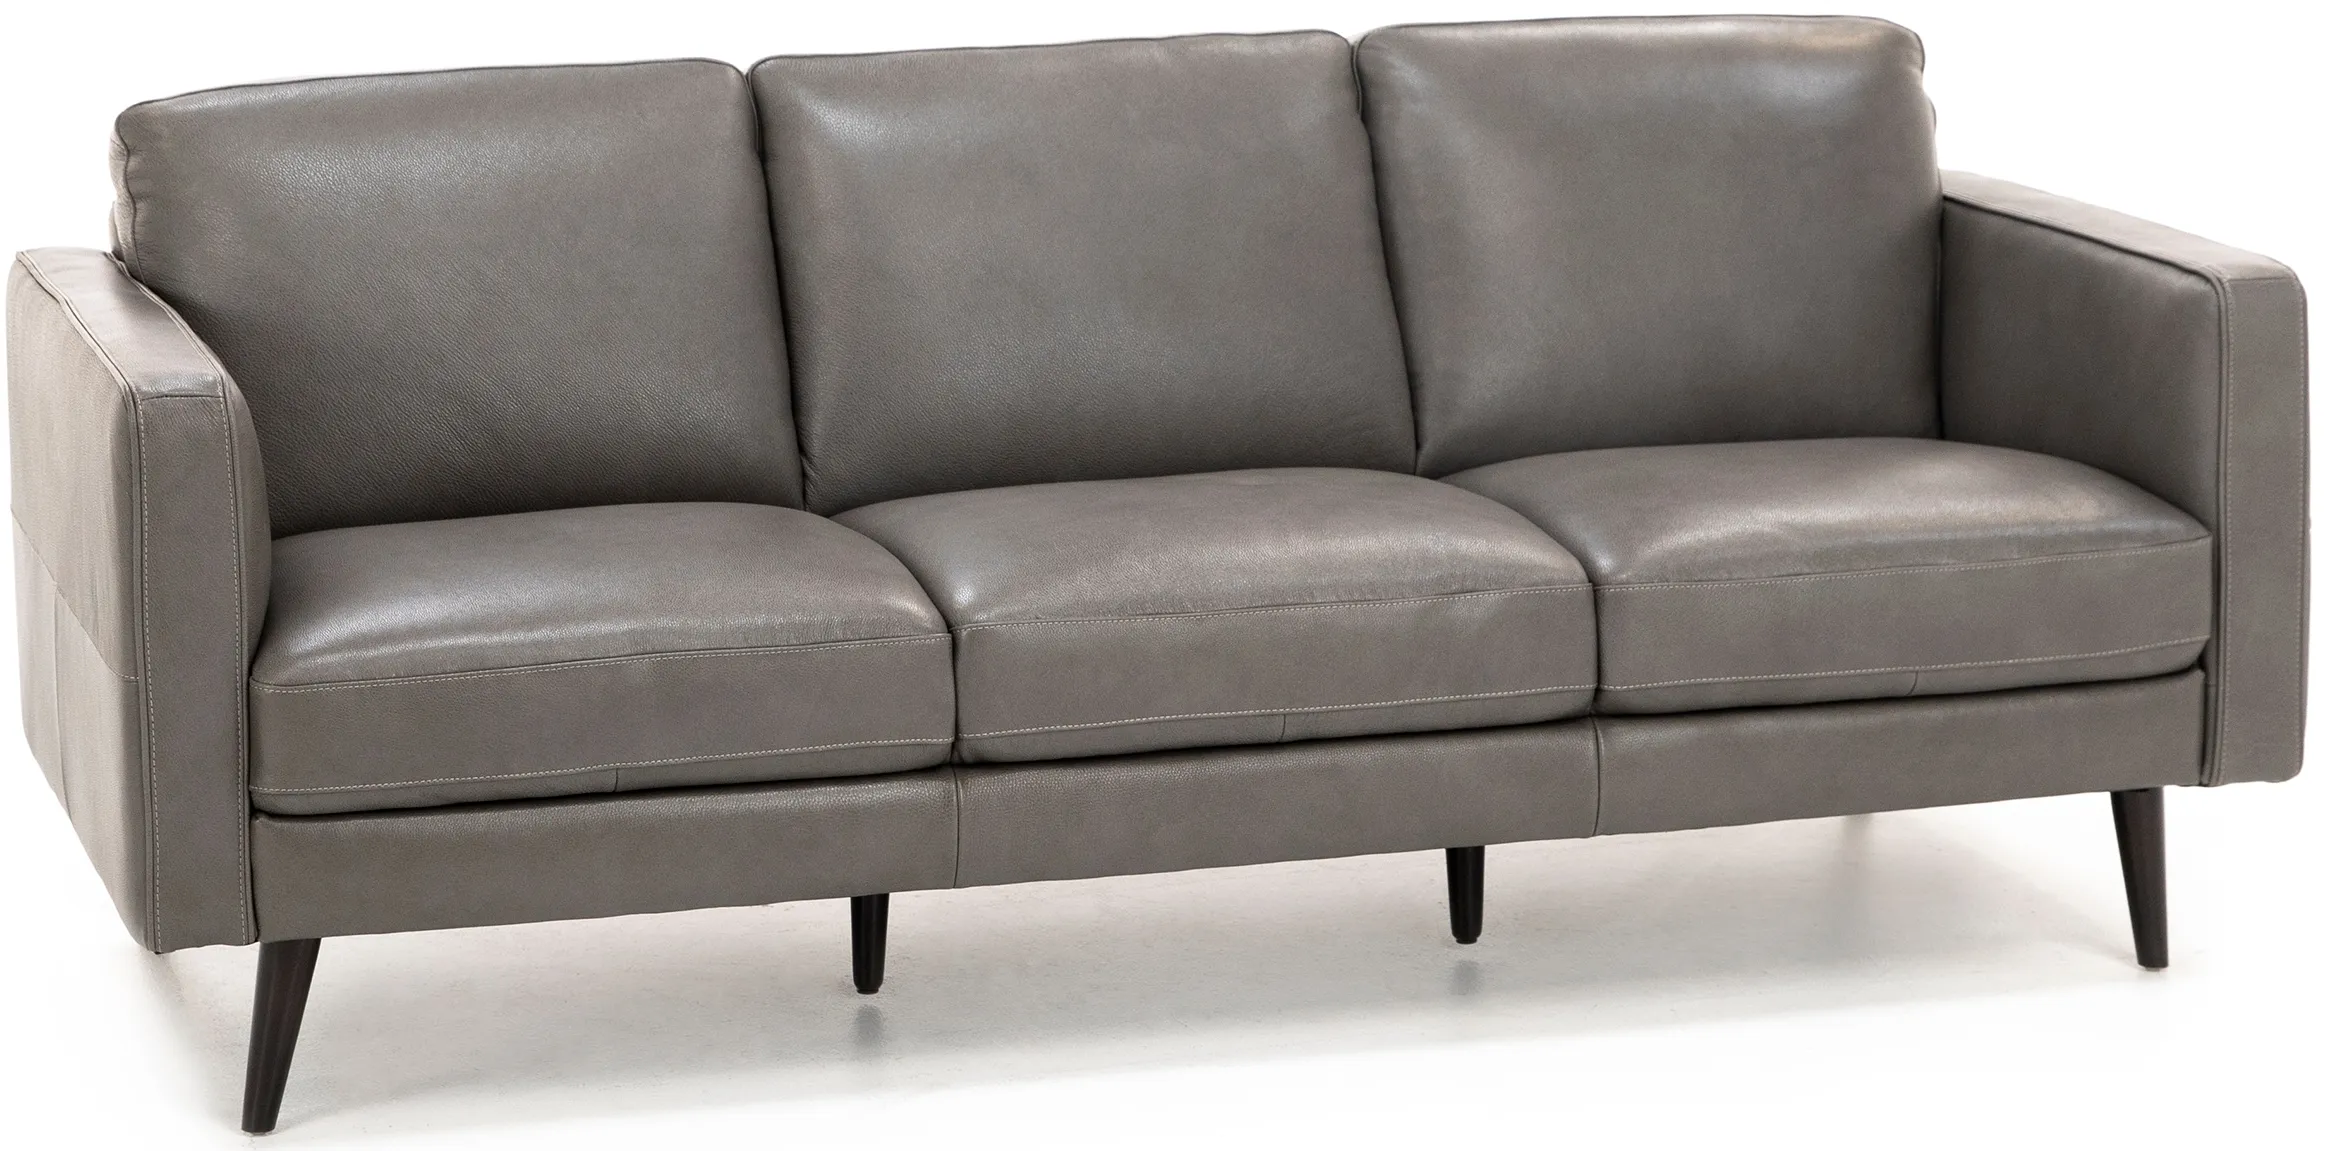 Turin Leather Sofa in Dark Grey